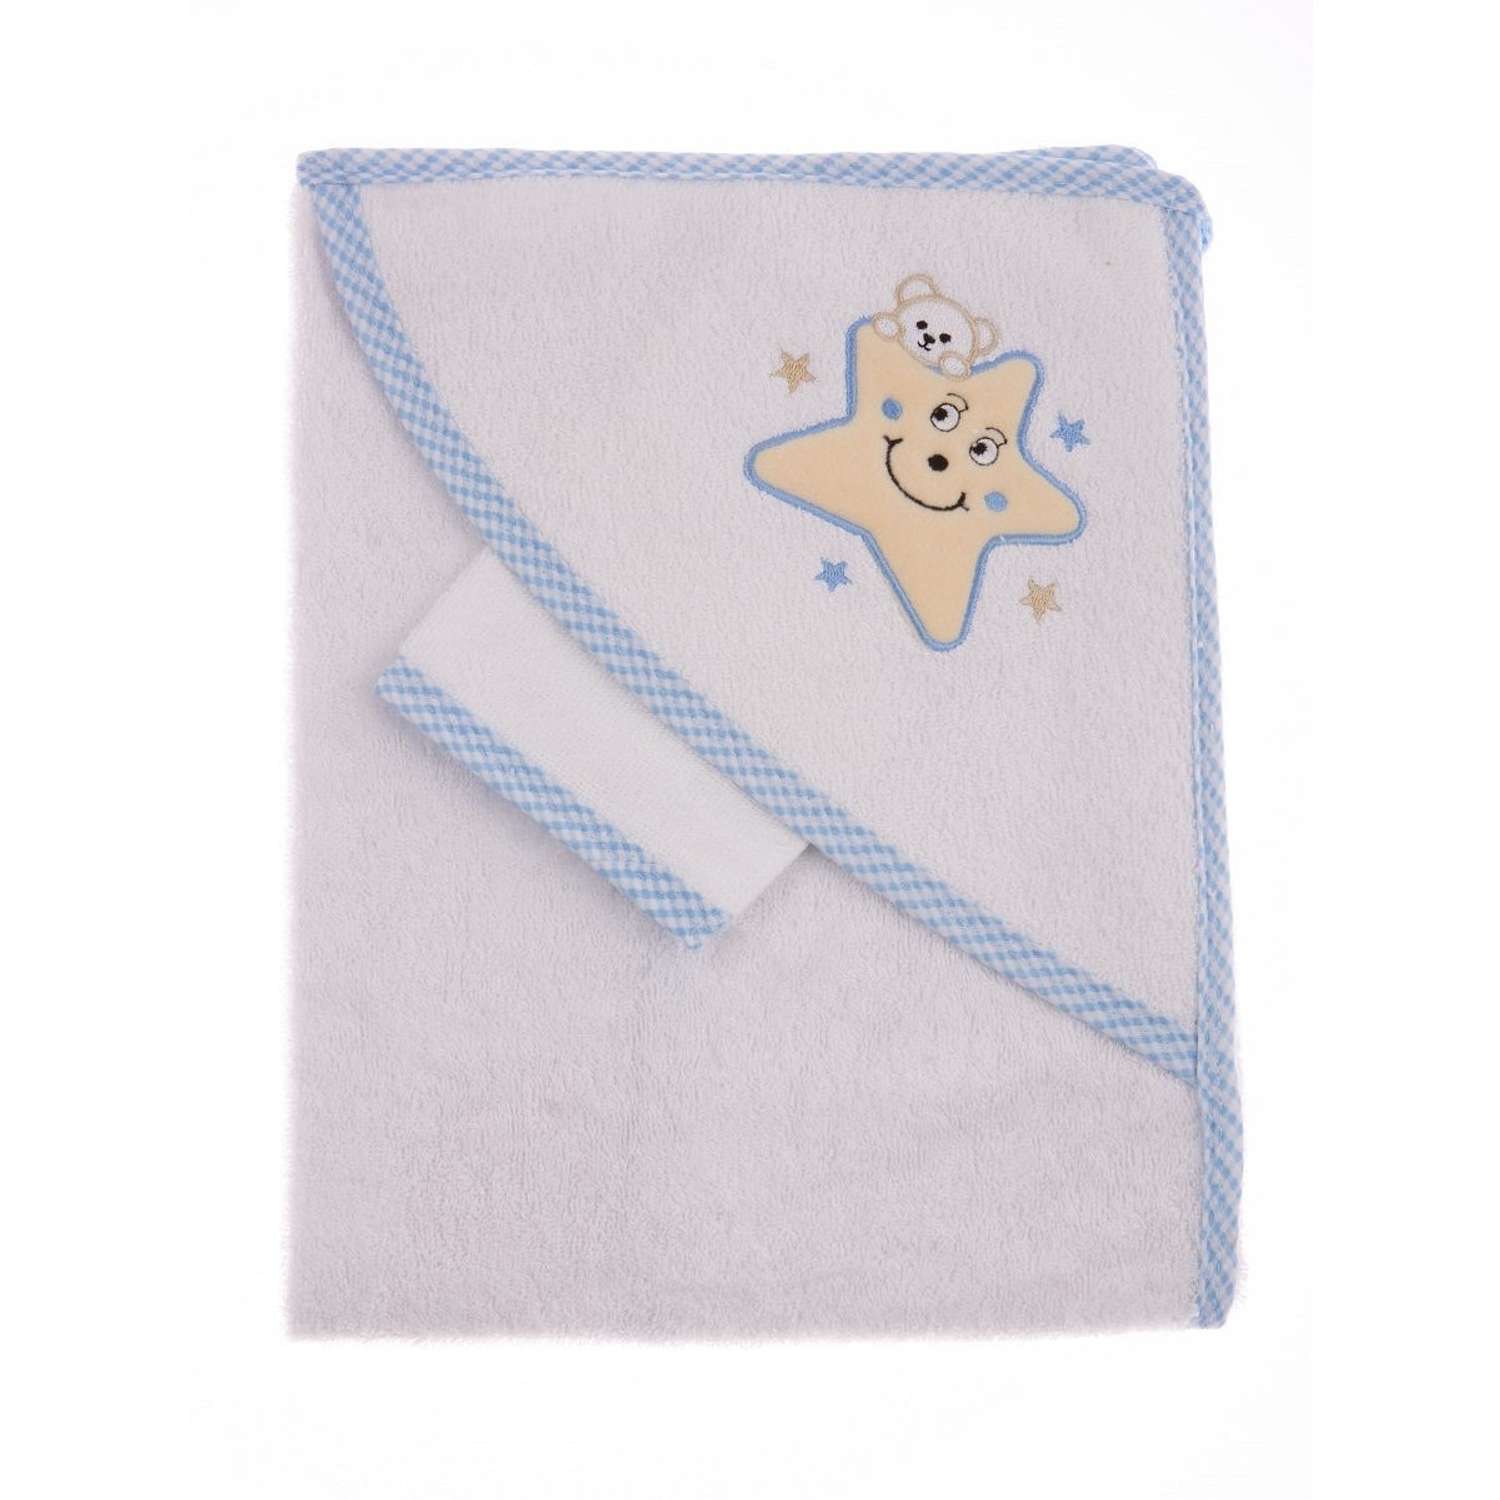 Набор для купания малыша M-BABY хлопковое махровое полотенце и рукавичка - фото 1